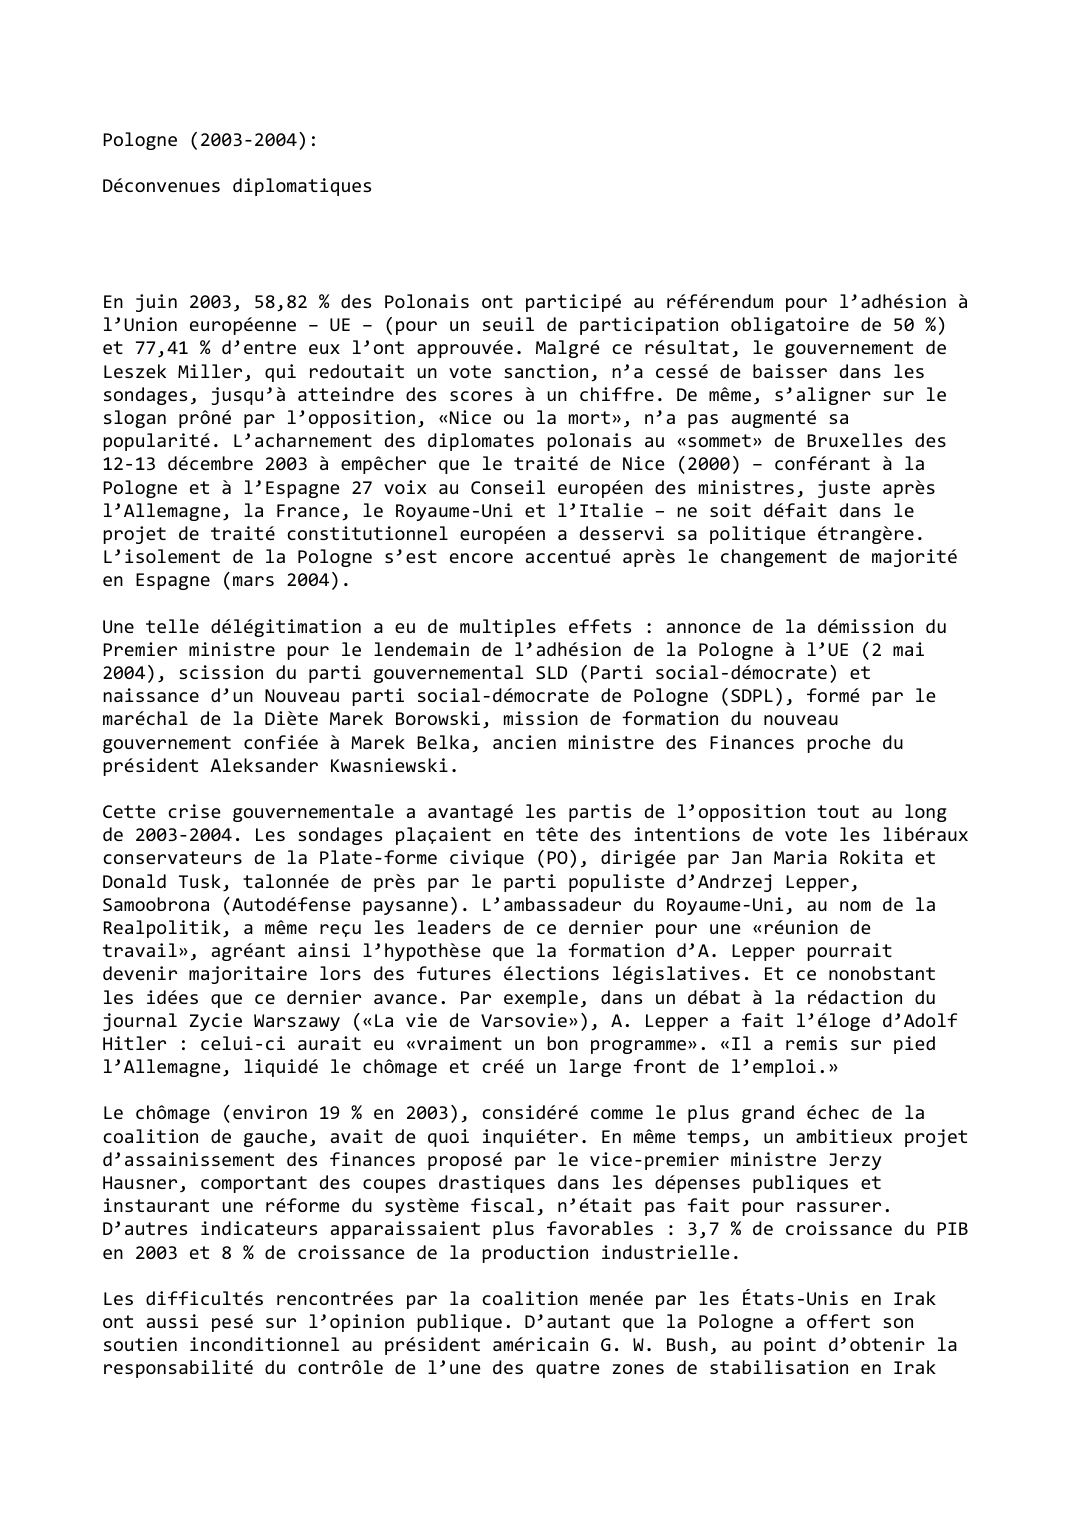 Prévisualisation du document Pologne (2003-2004):

Déconvenues diplomatiques